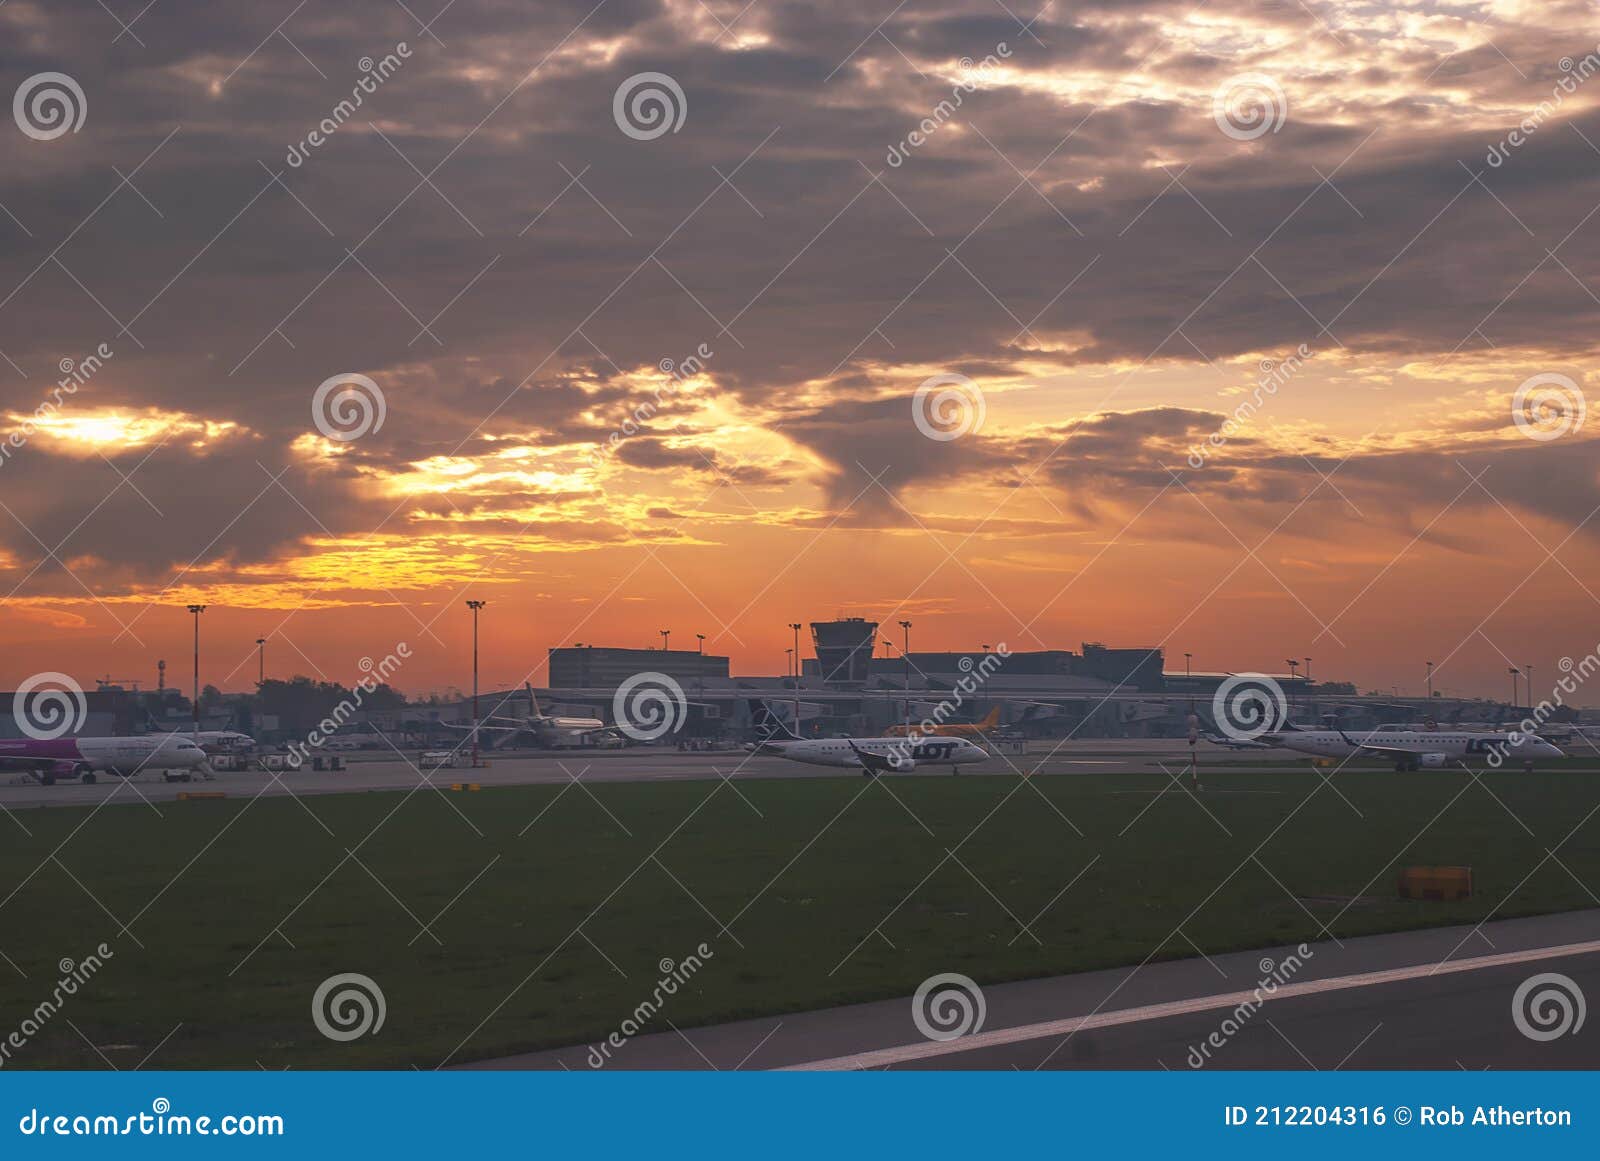 华沙肖邦机场视图 图库摄影片. 图片 包括有 如同, 航空, 华沙, 飞机, 机场, 飞行, 旅行, 超过 - 45644312